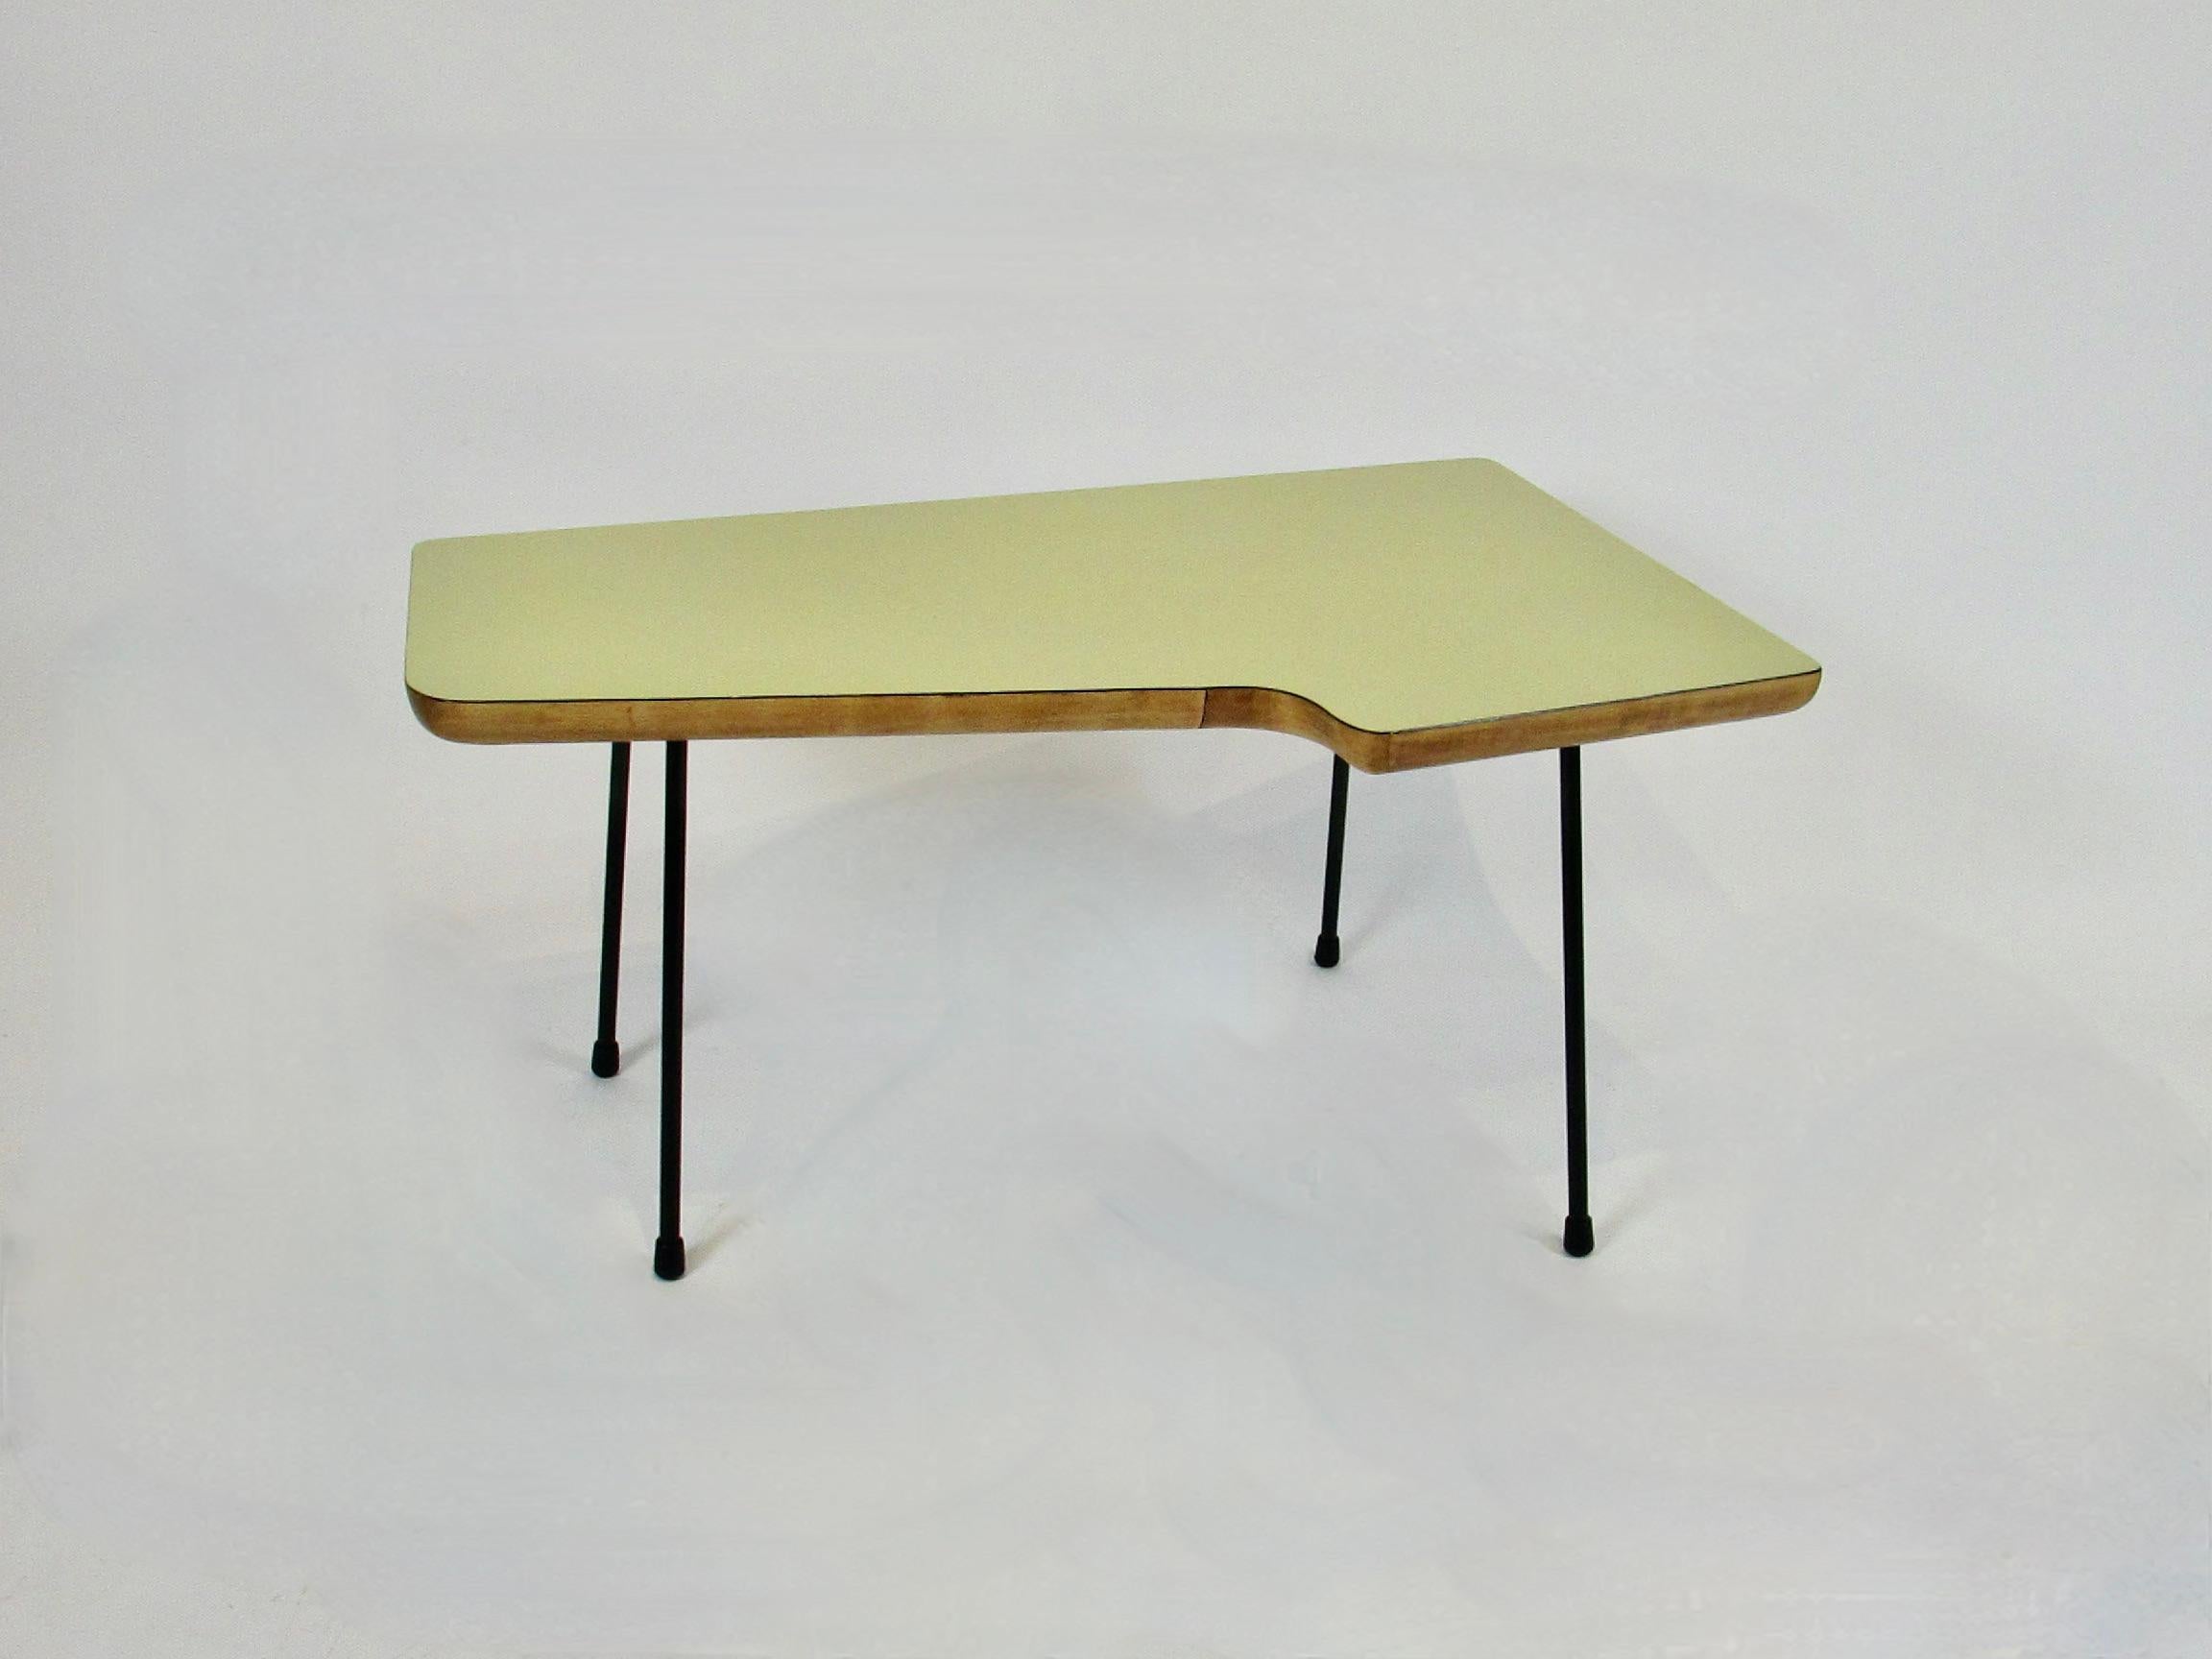  Carter Winter arbeitete mit Ray Komai zusammen, beides Designer der amerikanischen Moderne aus der Mitte des Jahrhunderts. Diese Tabelle identifiziert sich eng mit ihrem Stil und Design. Wunderbar organische Form in gutem Zustand. Laminatplatte mit